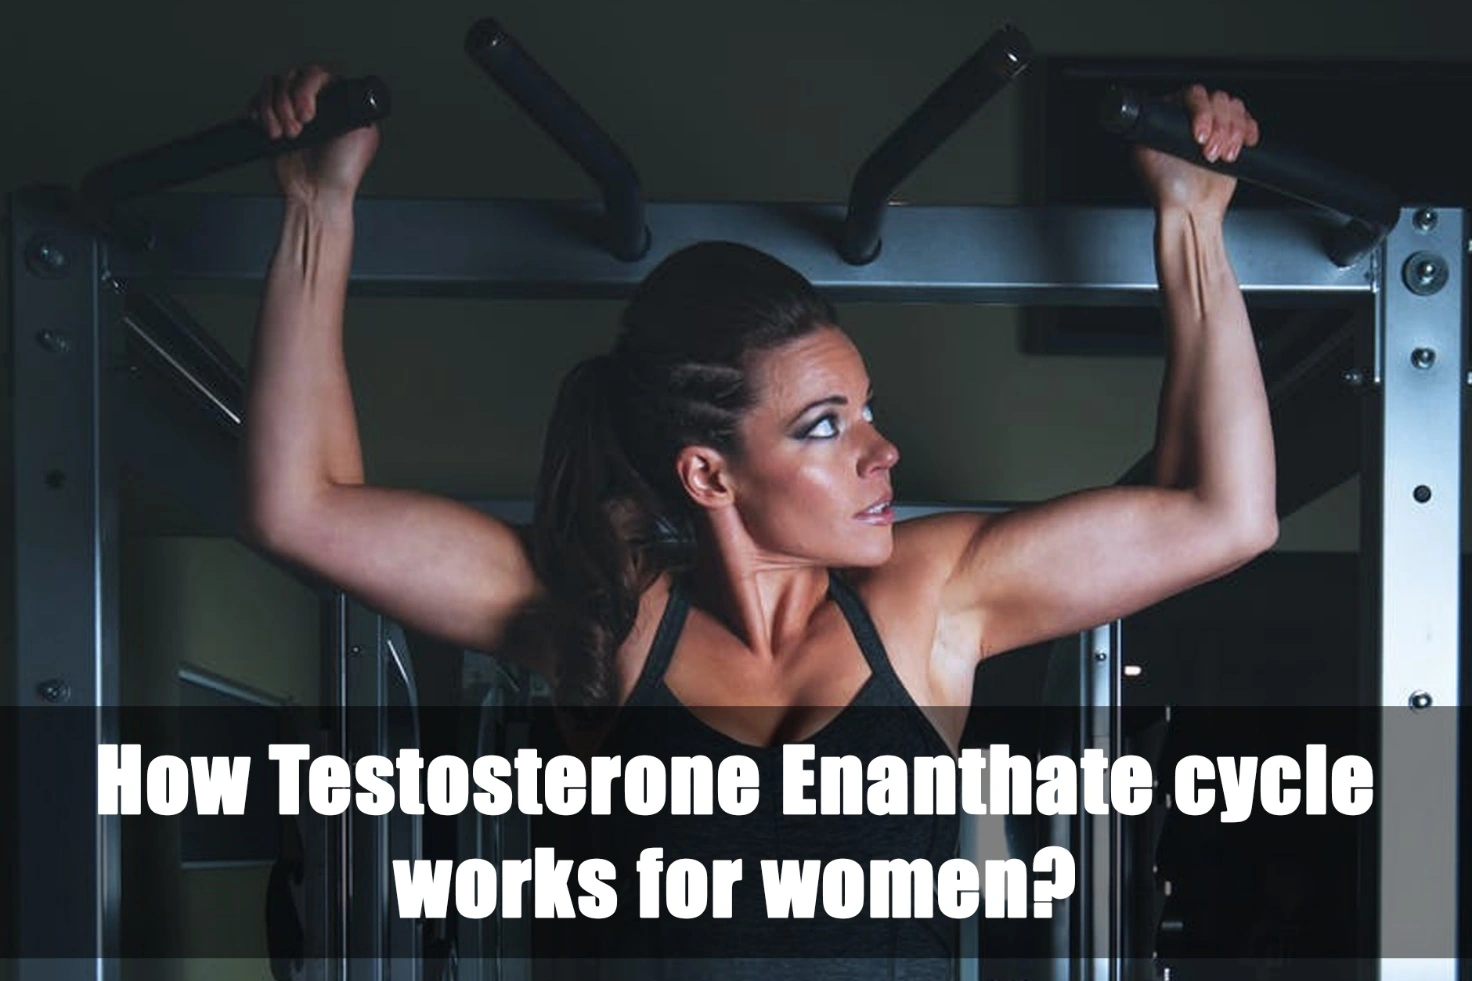 Ciclo di testosterone enantato per le donne